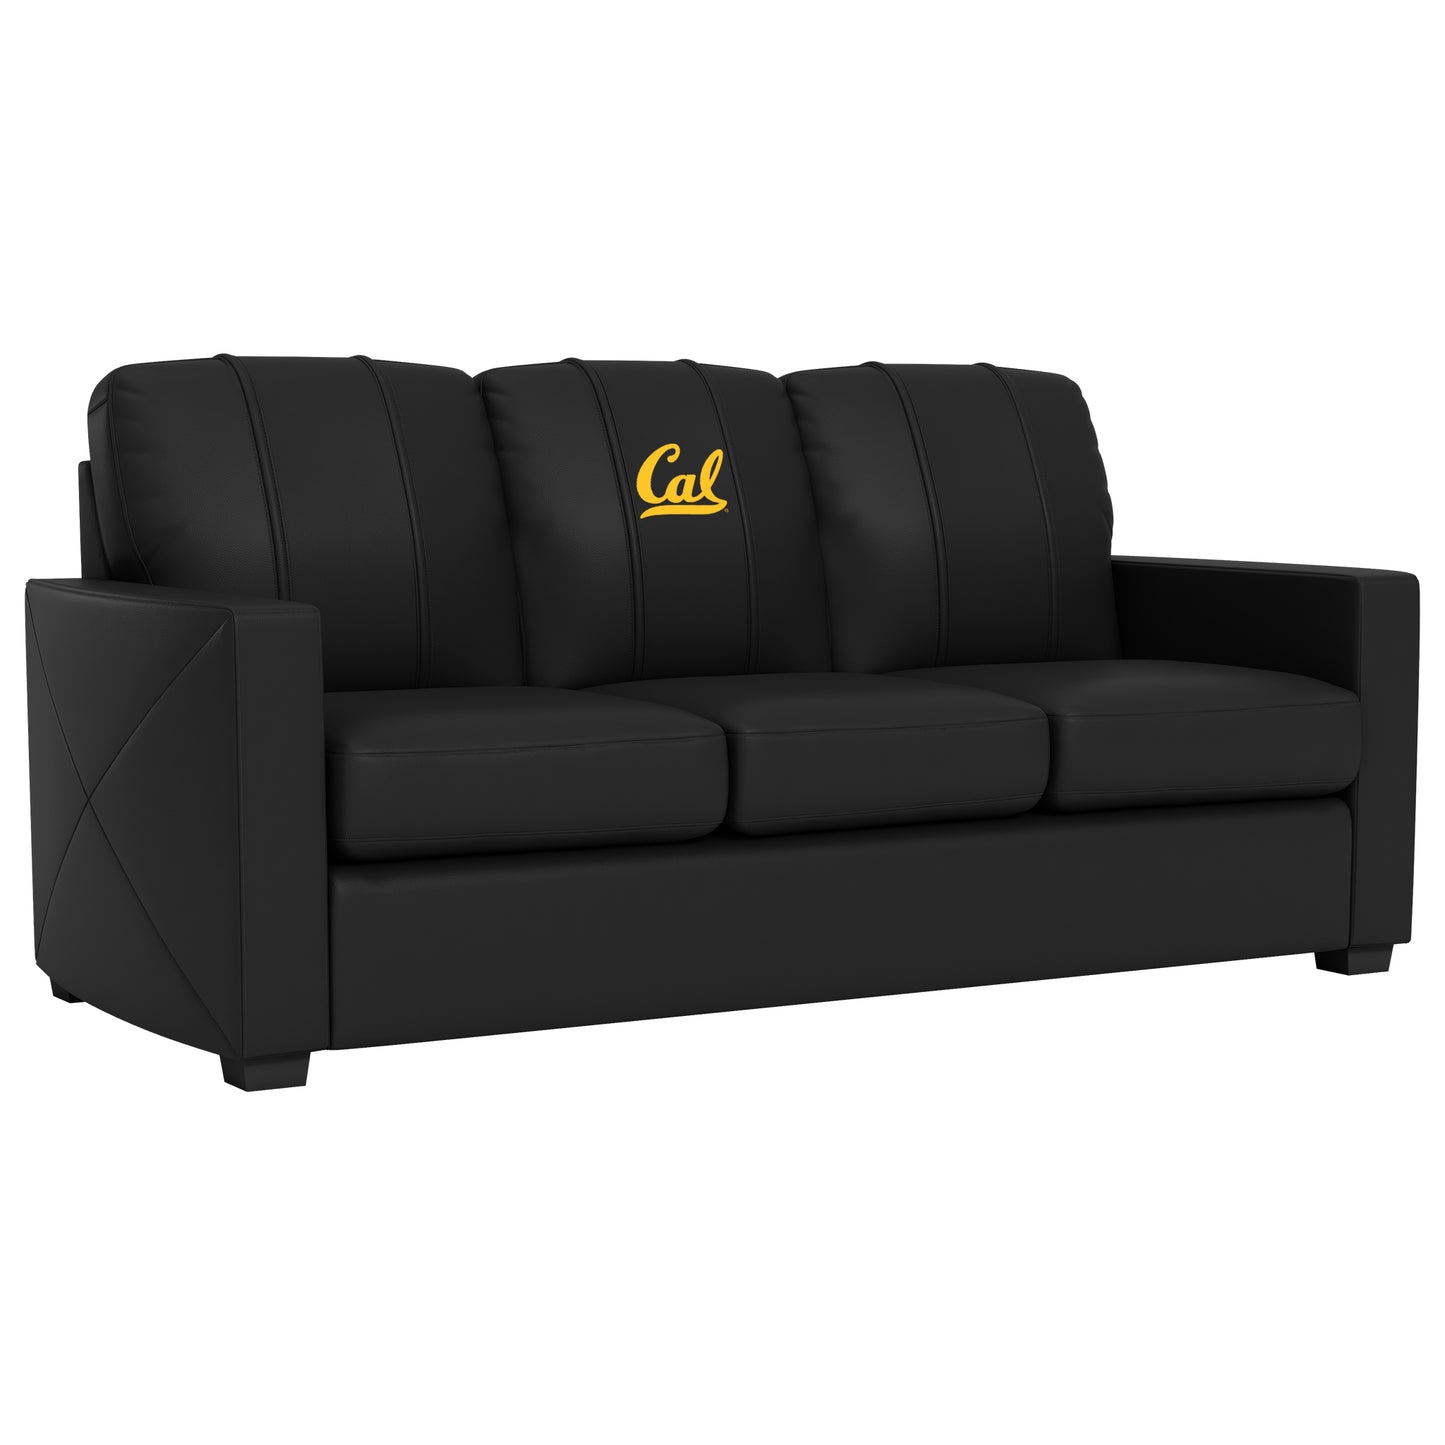 Silver Sofa with California Golden Bears Logo